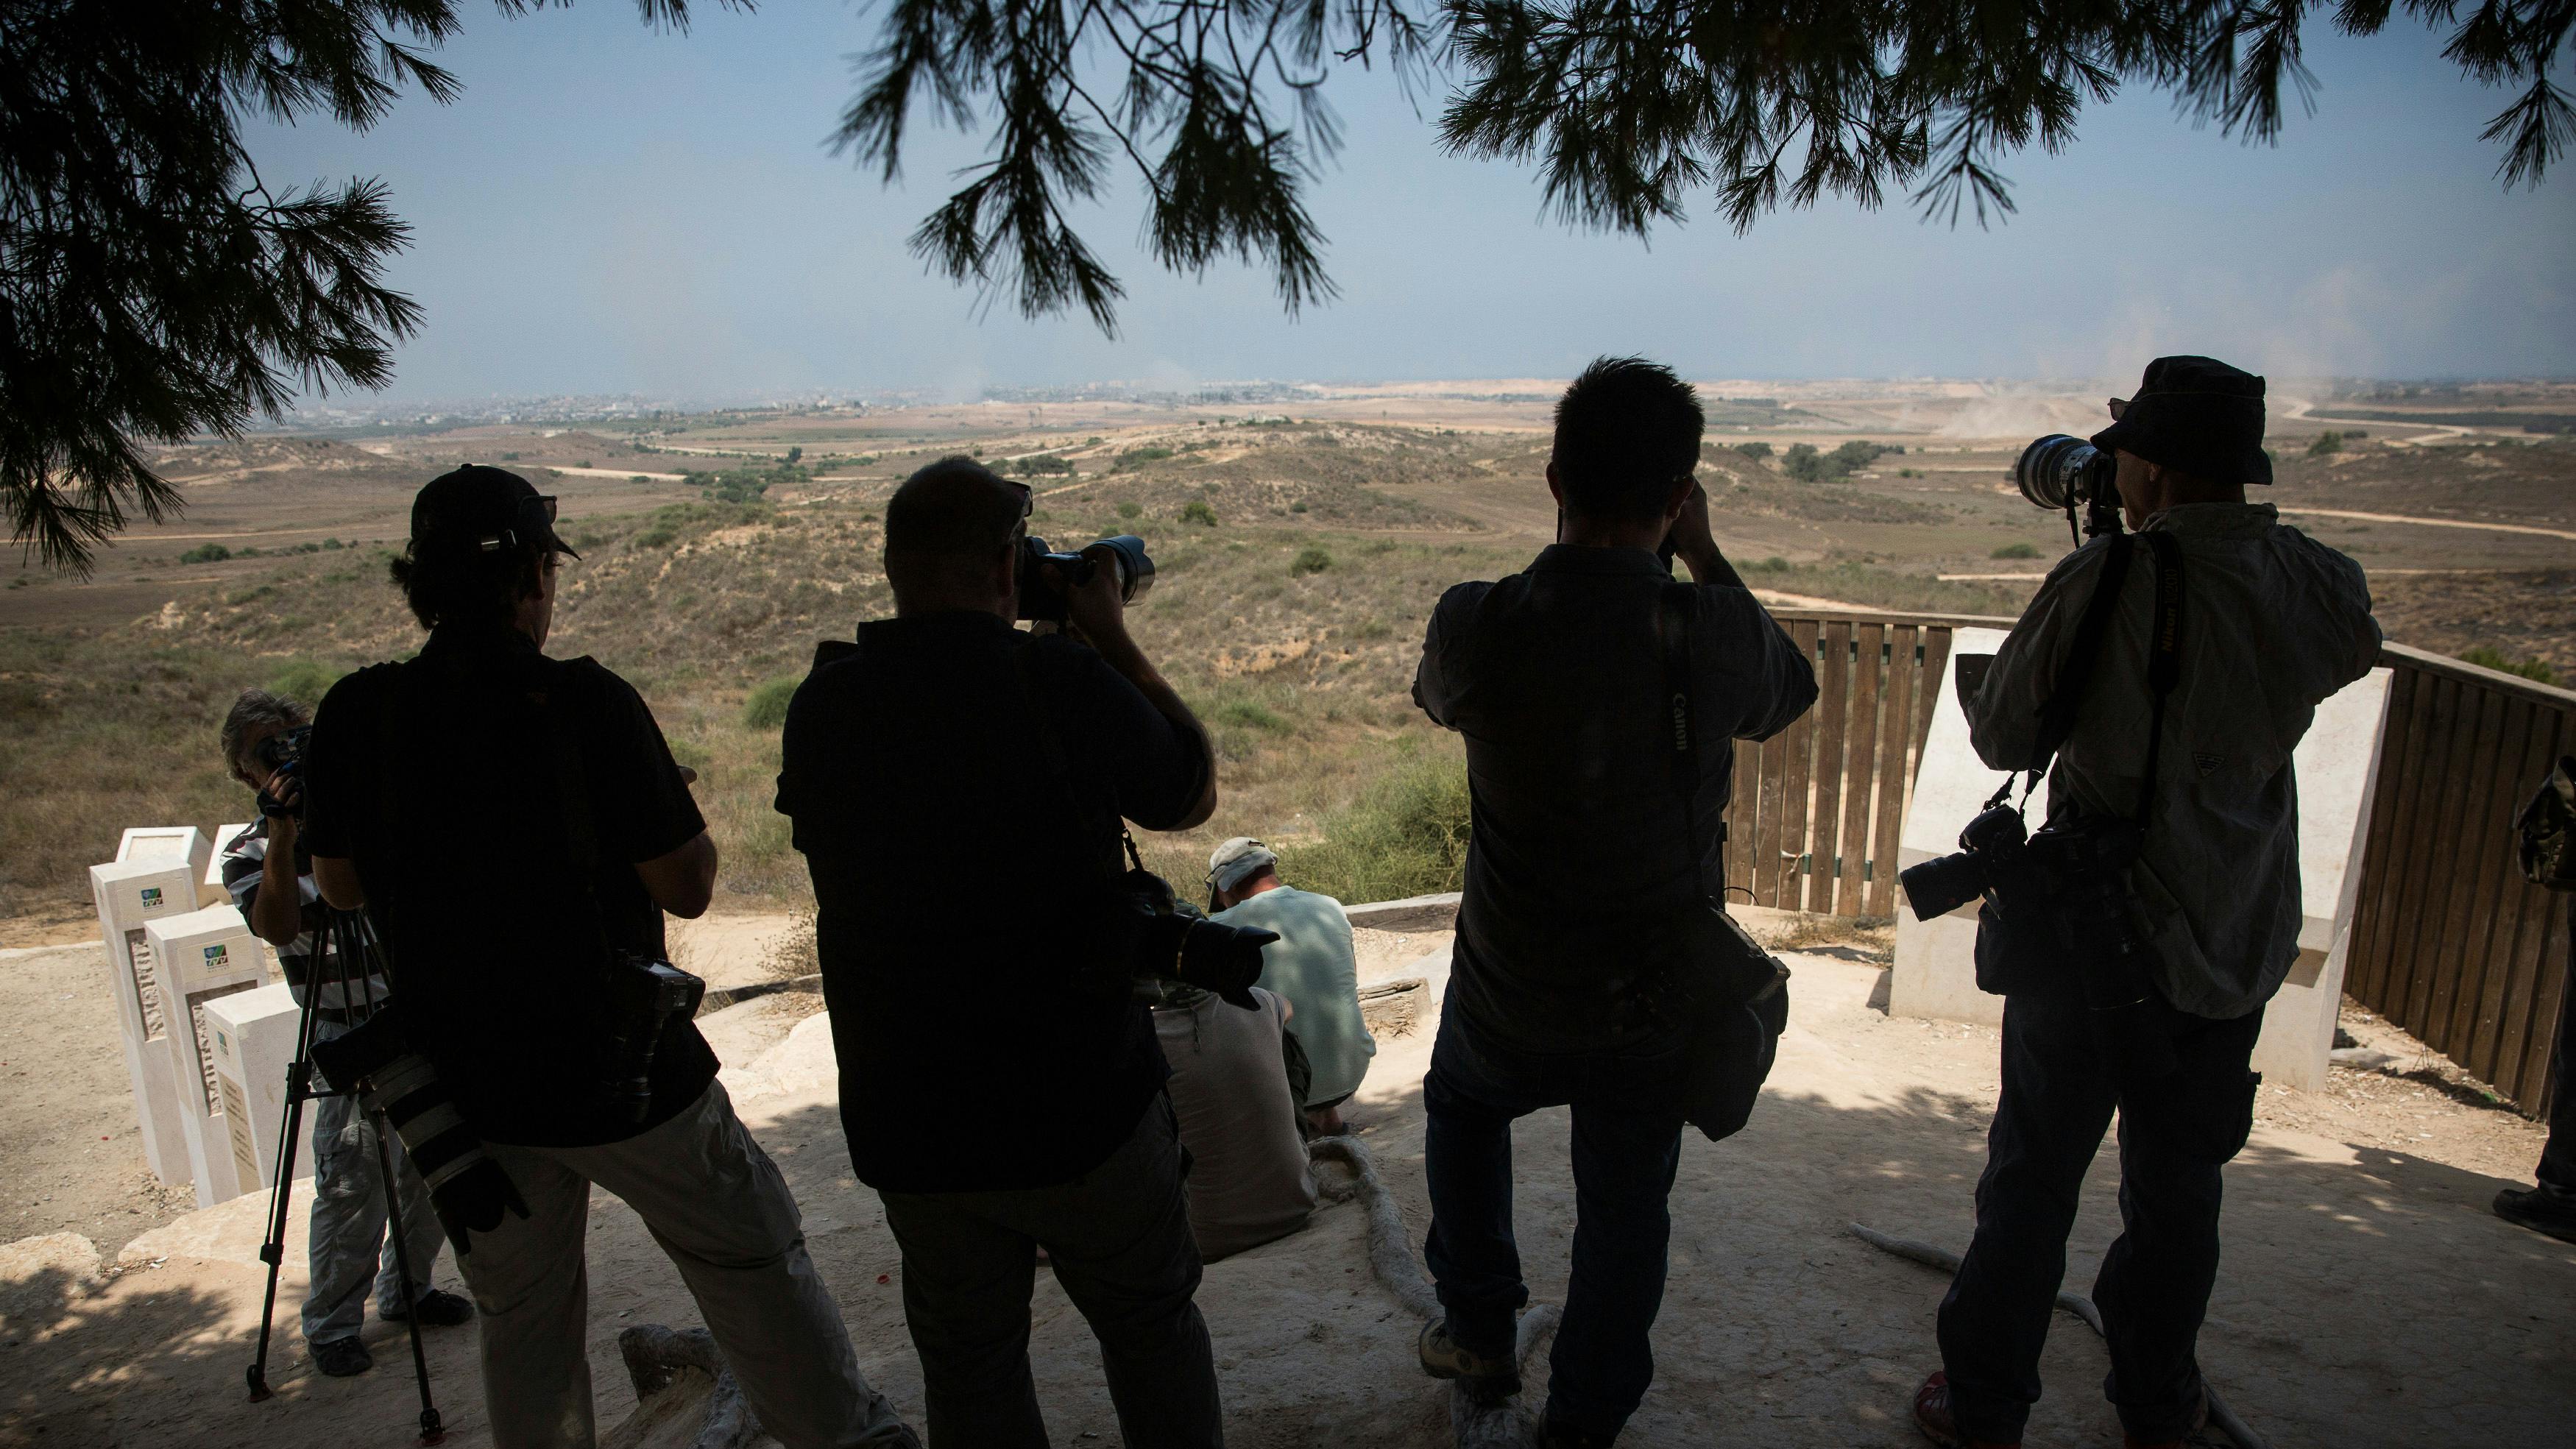 Im Vordergrund stehet eine Gruppe Fotograf*innen im Schatten eines Baumes, sie haben Ultratele-Objektive auf den Mittelgrund gerichtet. Dort sehen wir eine Staubfahne welche der Bildbeschreibung folgenden von, auf Gaza vorrückenden, Militärkonvois stammt. 